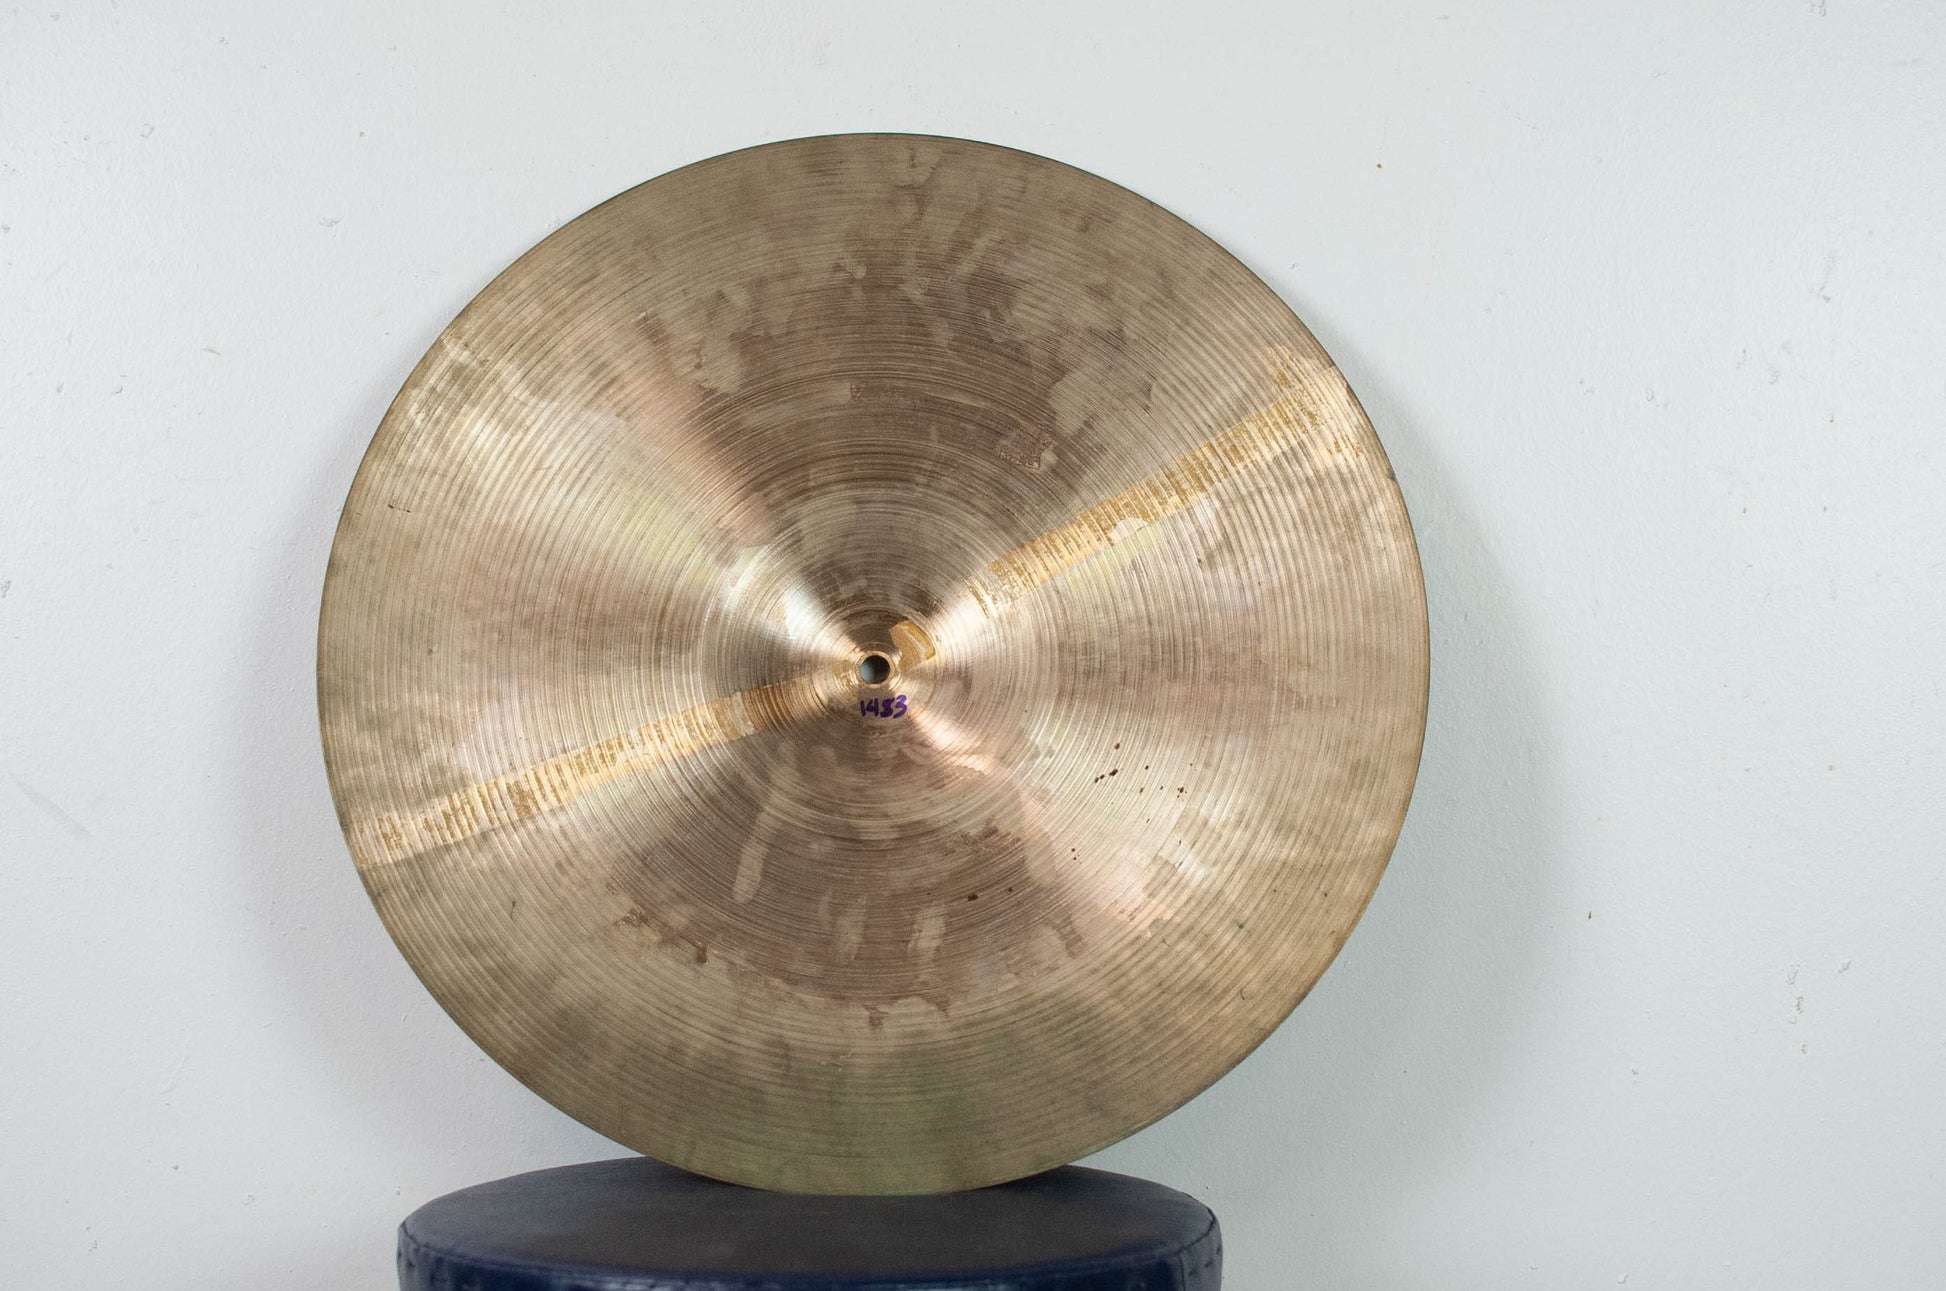 1970s Zildjian 18" Crash Cymbal 1483g